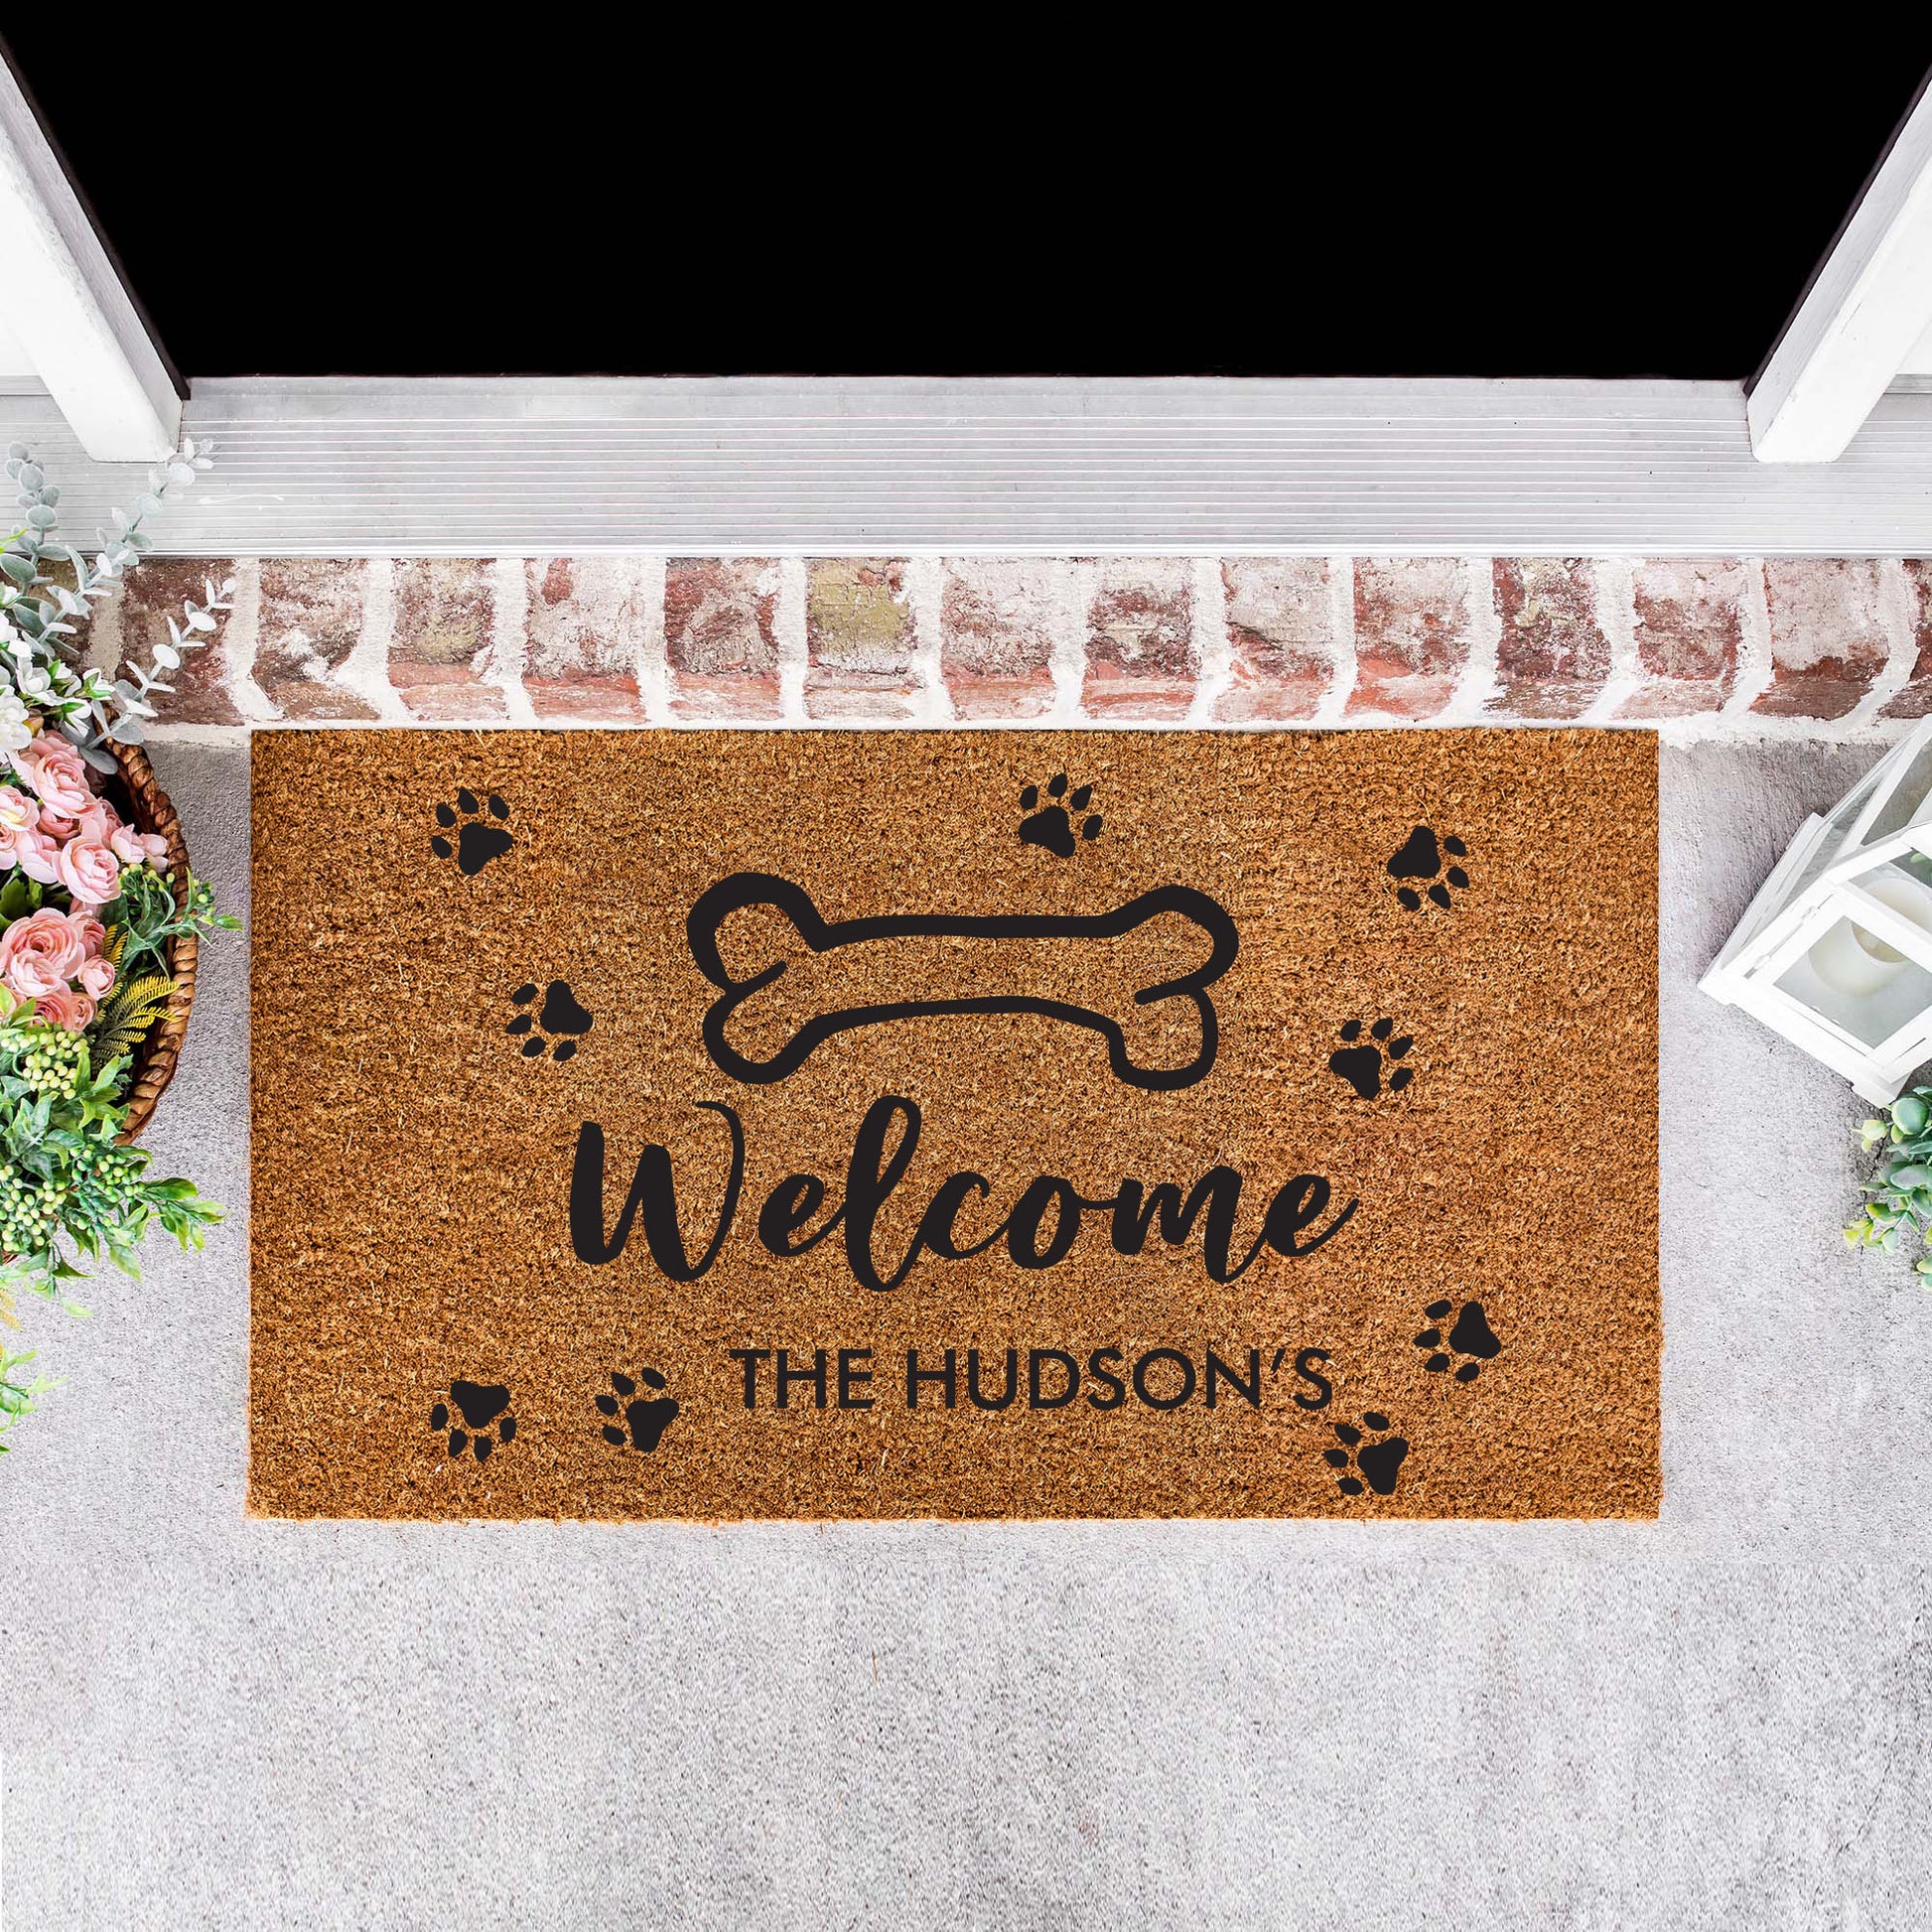 Personalised Doormat with dog bone and paw-Welcome Custom Door Mat, New Home Gift Doormat-Personalised Custom Gift-Housewarming Bride Gift